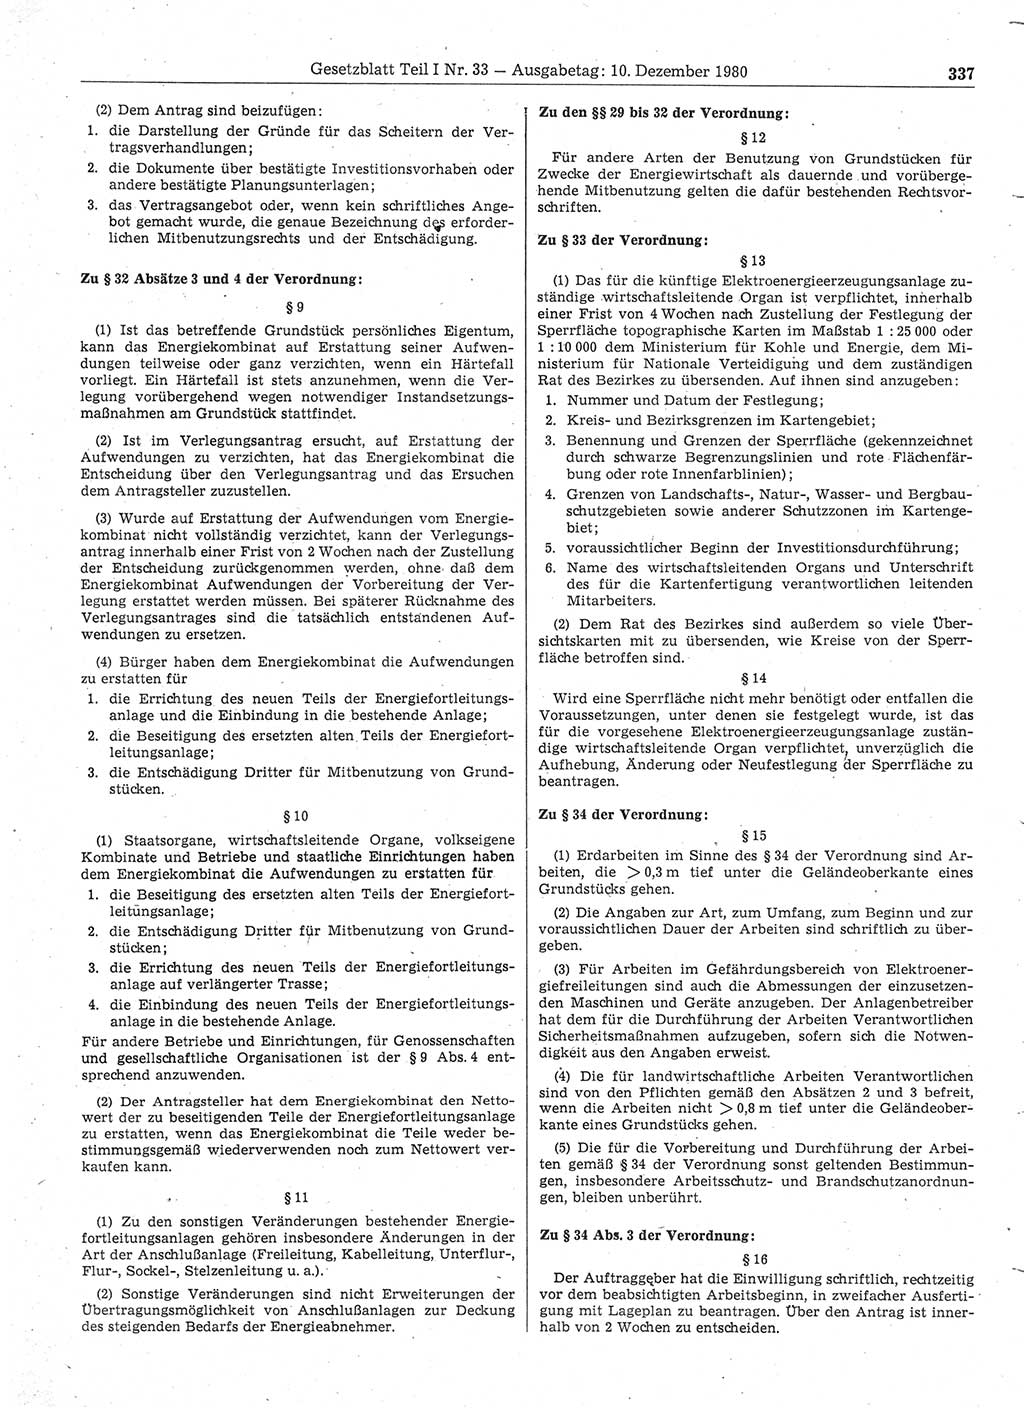 Gesetzblatt (GBl.) der Deutschen Demokratischen Republik (DDR) Teil Ⅰ 1980, Seite 337 (GBl. DDR Ⅰ 1980, S. 337)